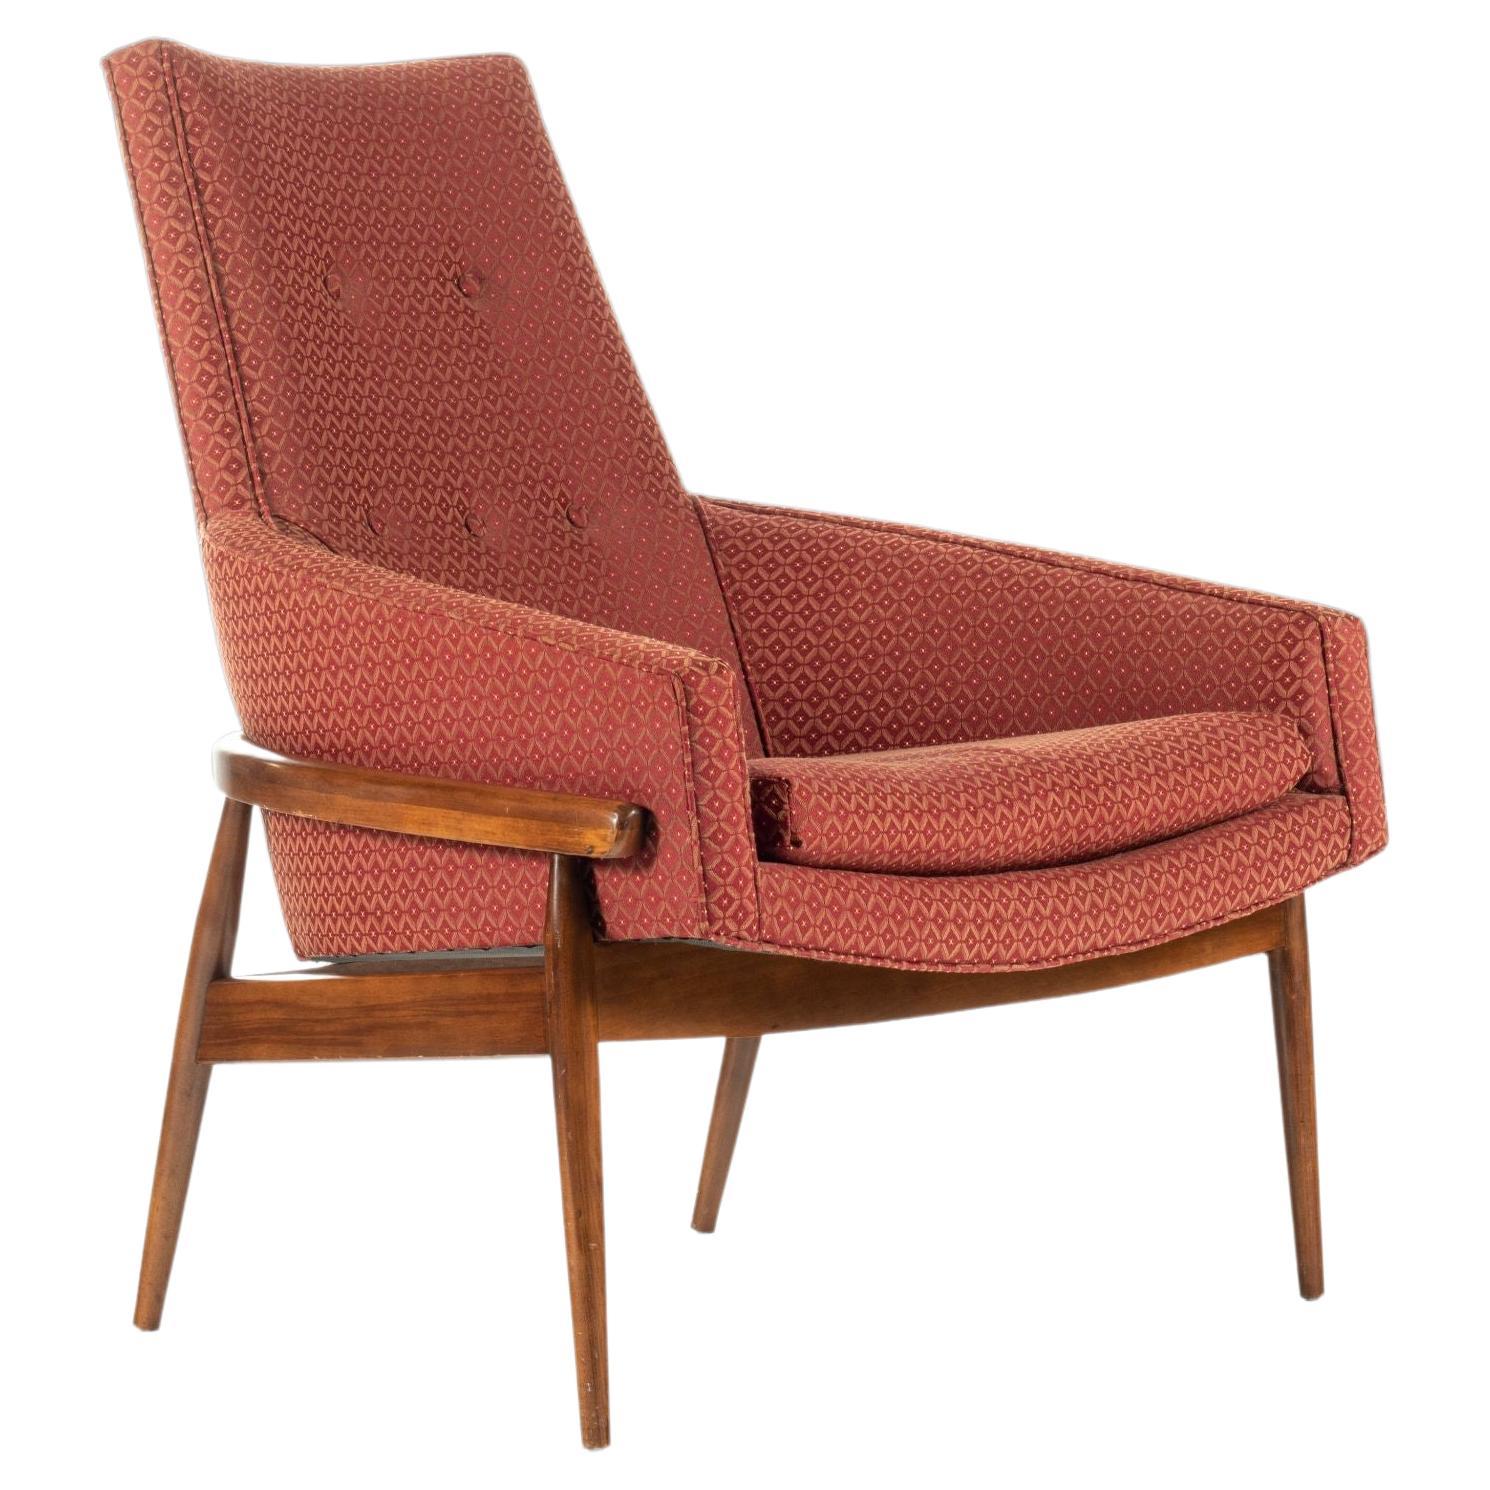 Mid-Century Modern Rubinroter Fassstuhl mit hoher Rückenlehne Fairfield Chair Co., ca. 1960er Jahre